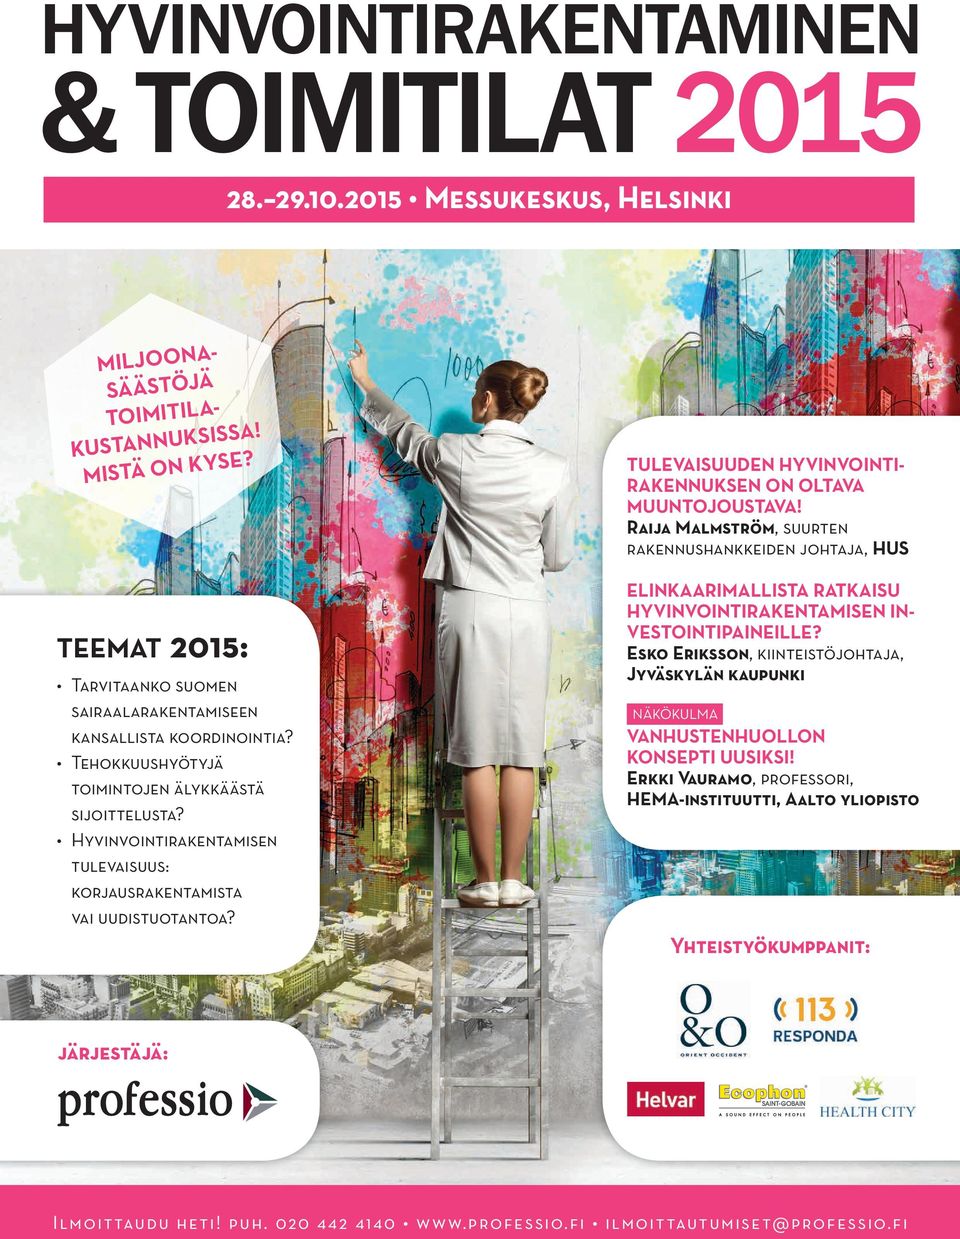 Raija Malmström, suurten rakennushankkeiden johtaja, HUS Teemat 2015: Tarvitaanko suomen sairaalarakentamiseen kansallista koordinointia?